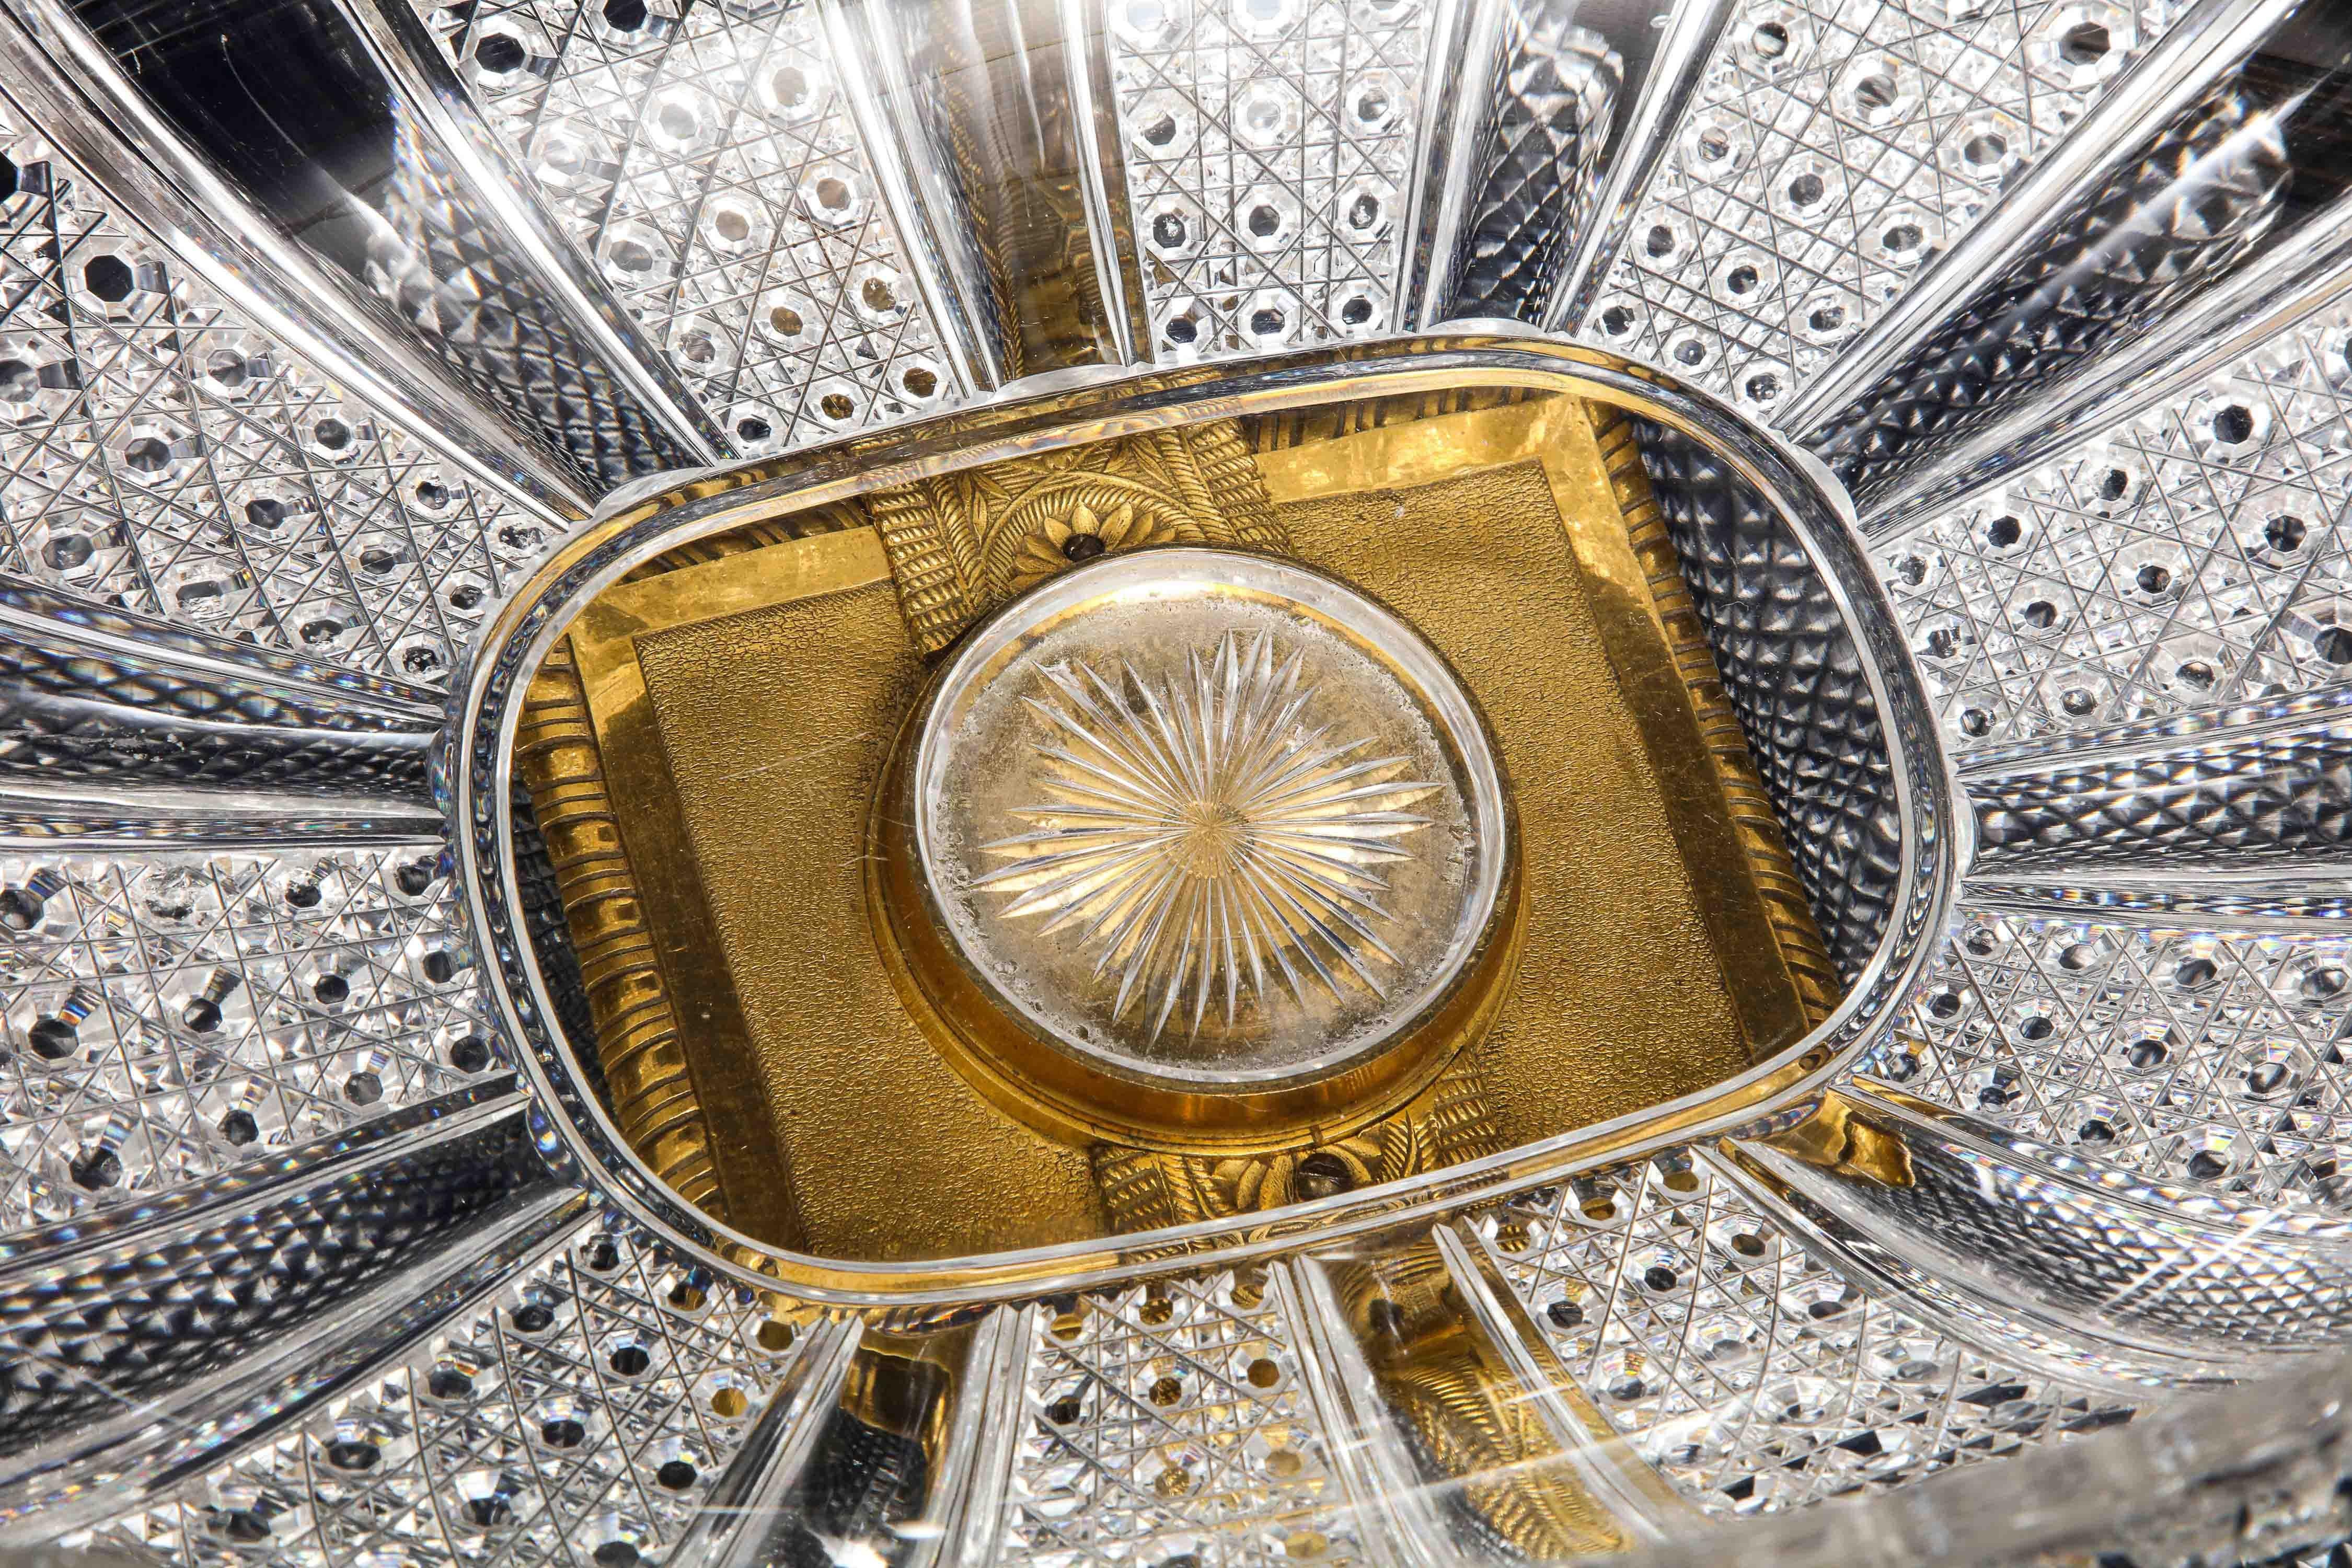 Hand-Diamond Cut Crystal & Ormolu Mounted Baccarat Centerpiece/Surtout de Table 4